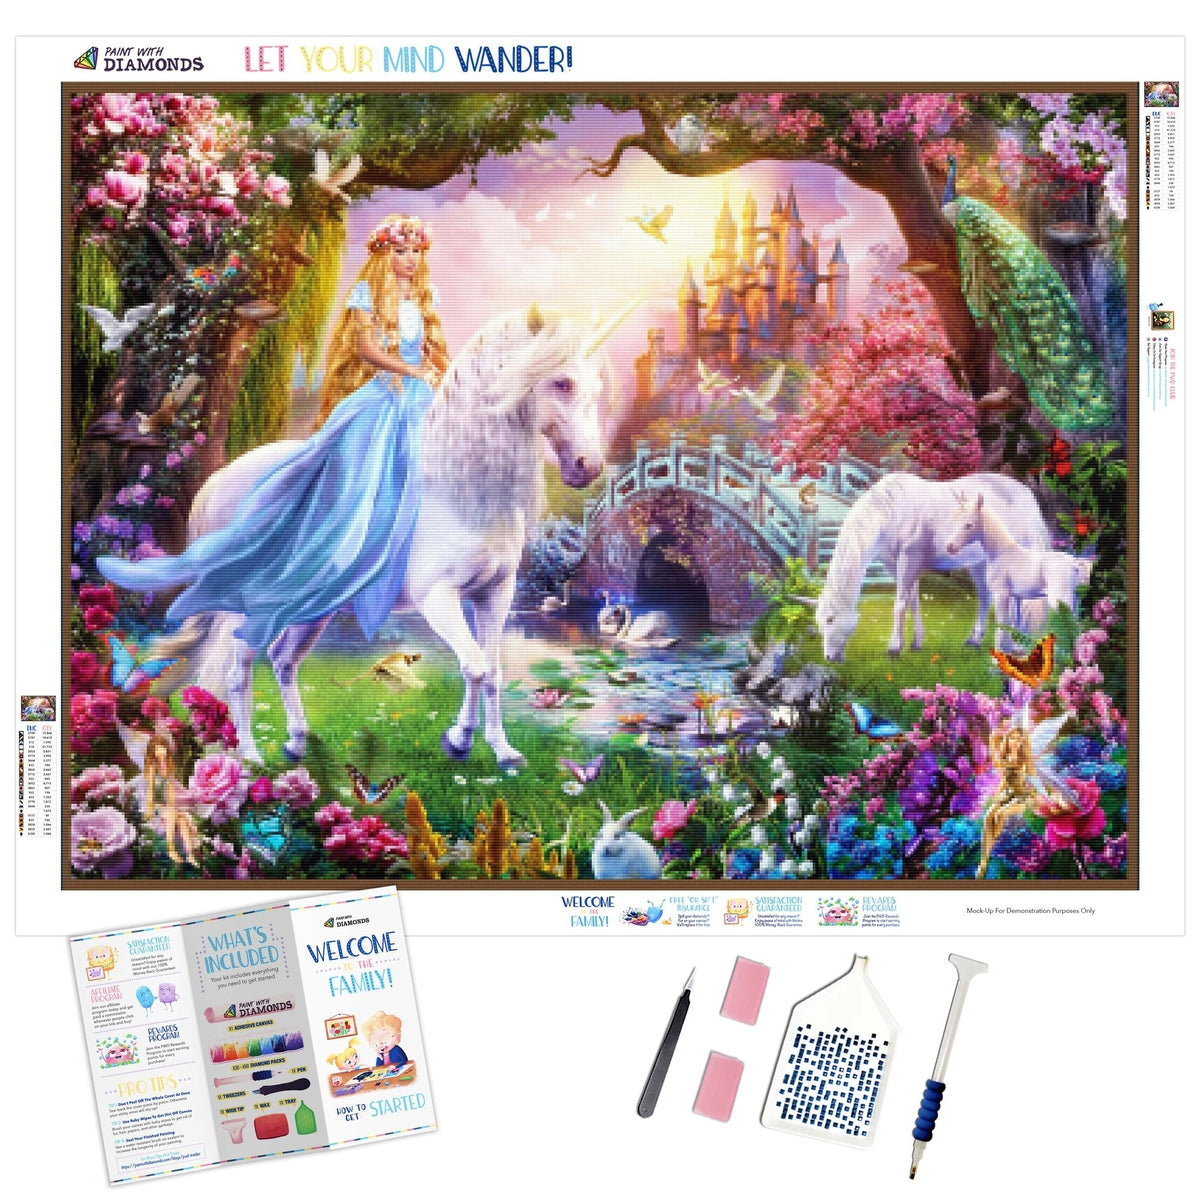 Diamond Dotz® Intermediate Princess Unicorn Diamond Painting Kit